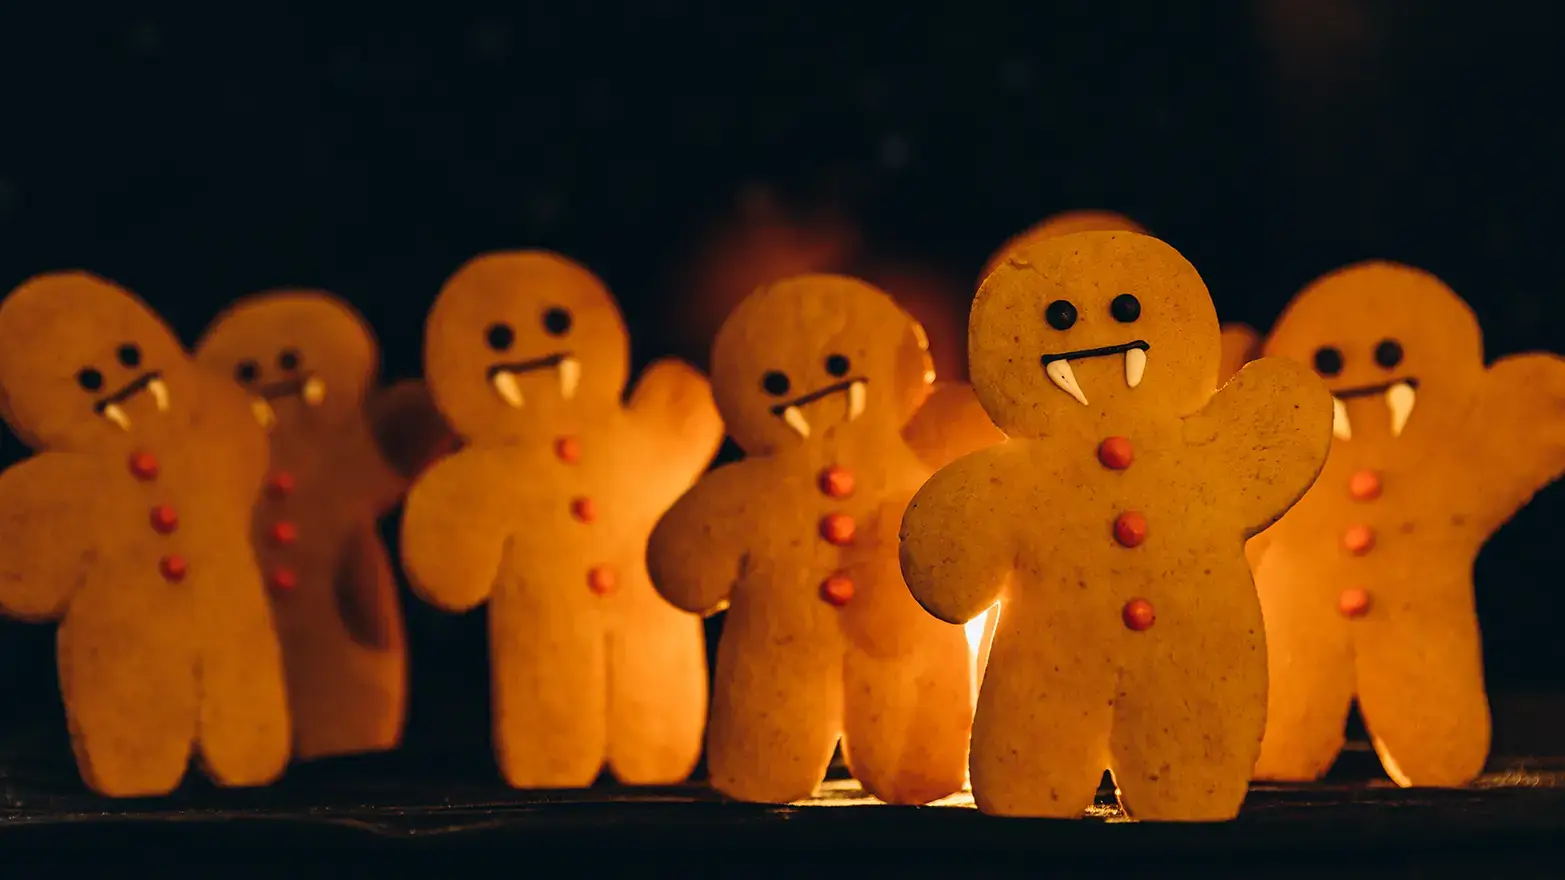 Gingerbread men decorated like vampires
